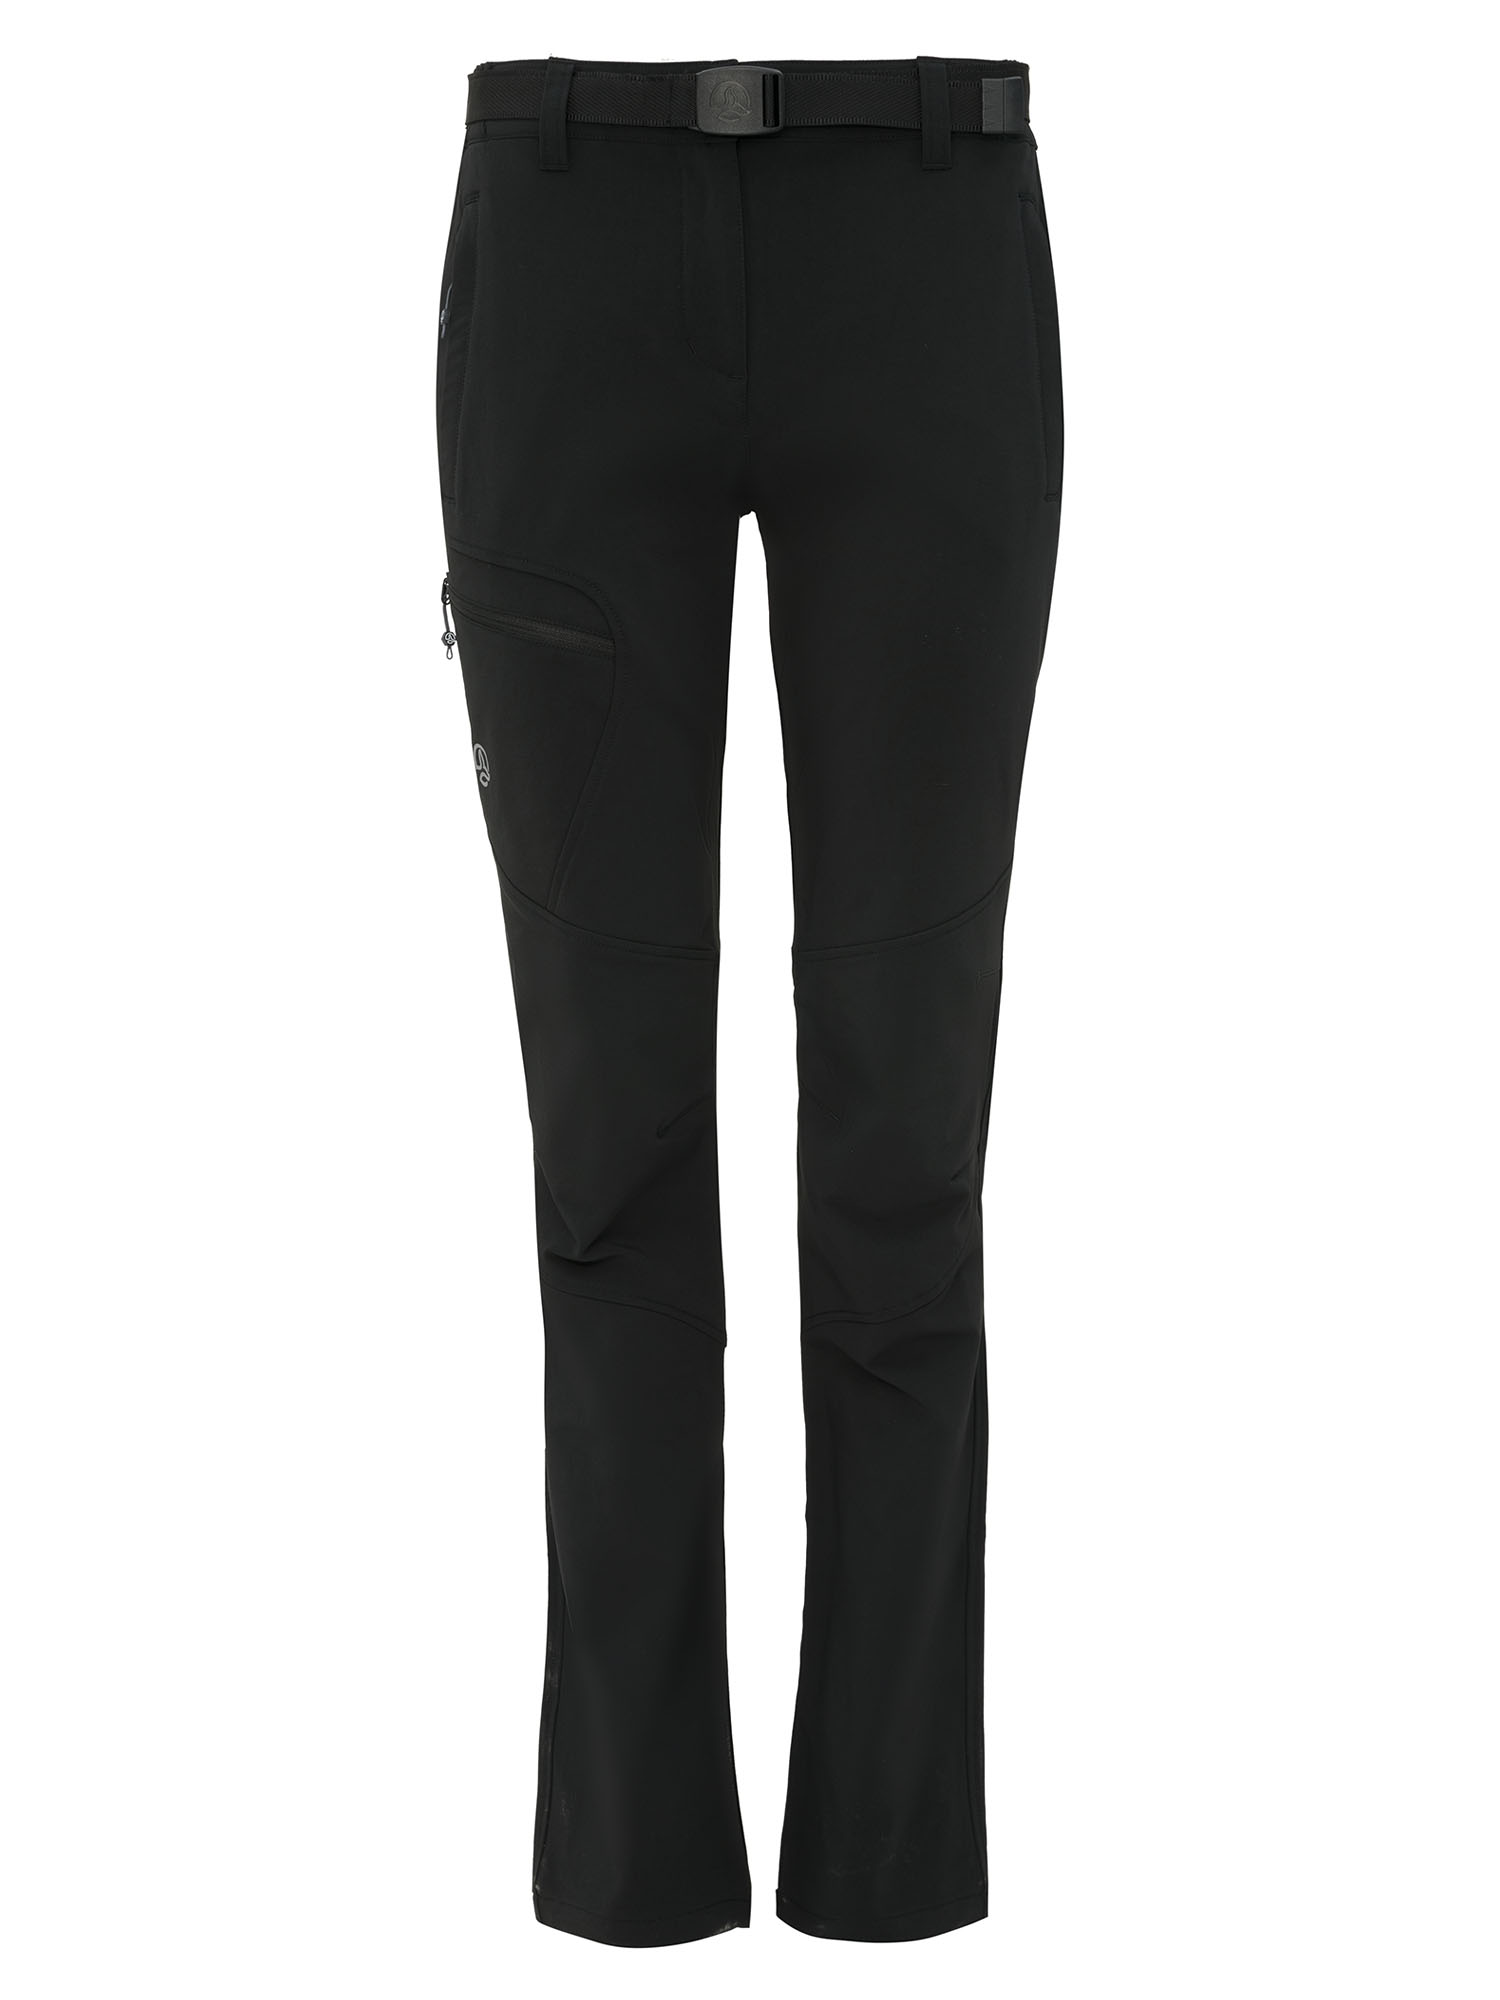 Спортивные брюки женские Ternua Hopeall Pant черные L